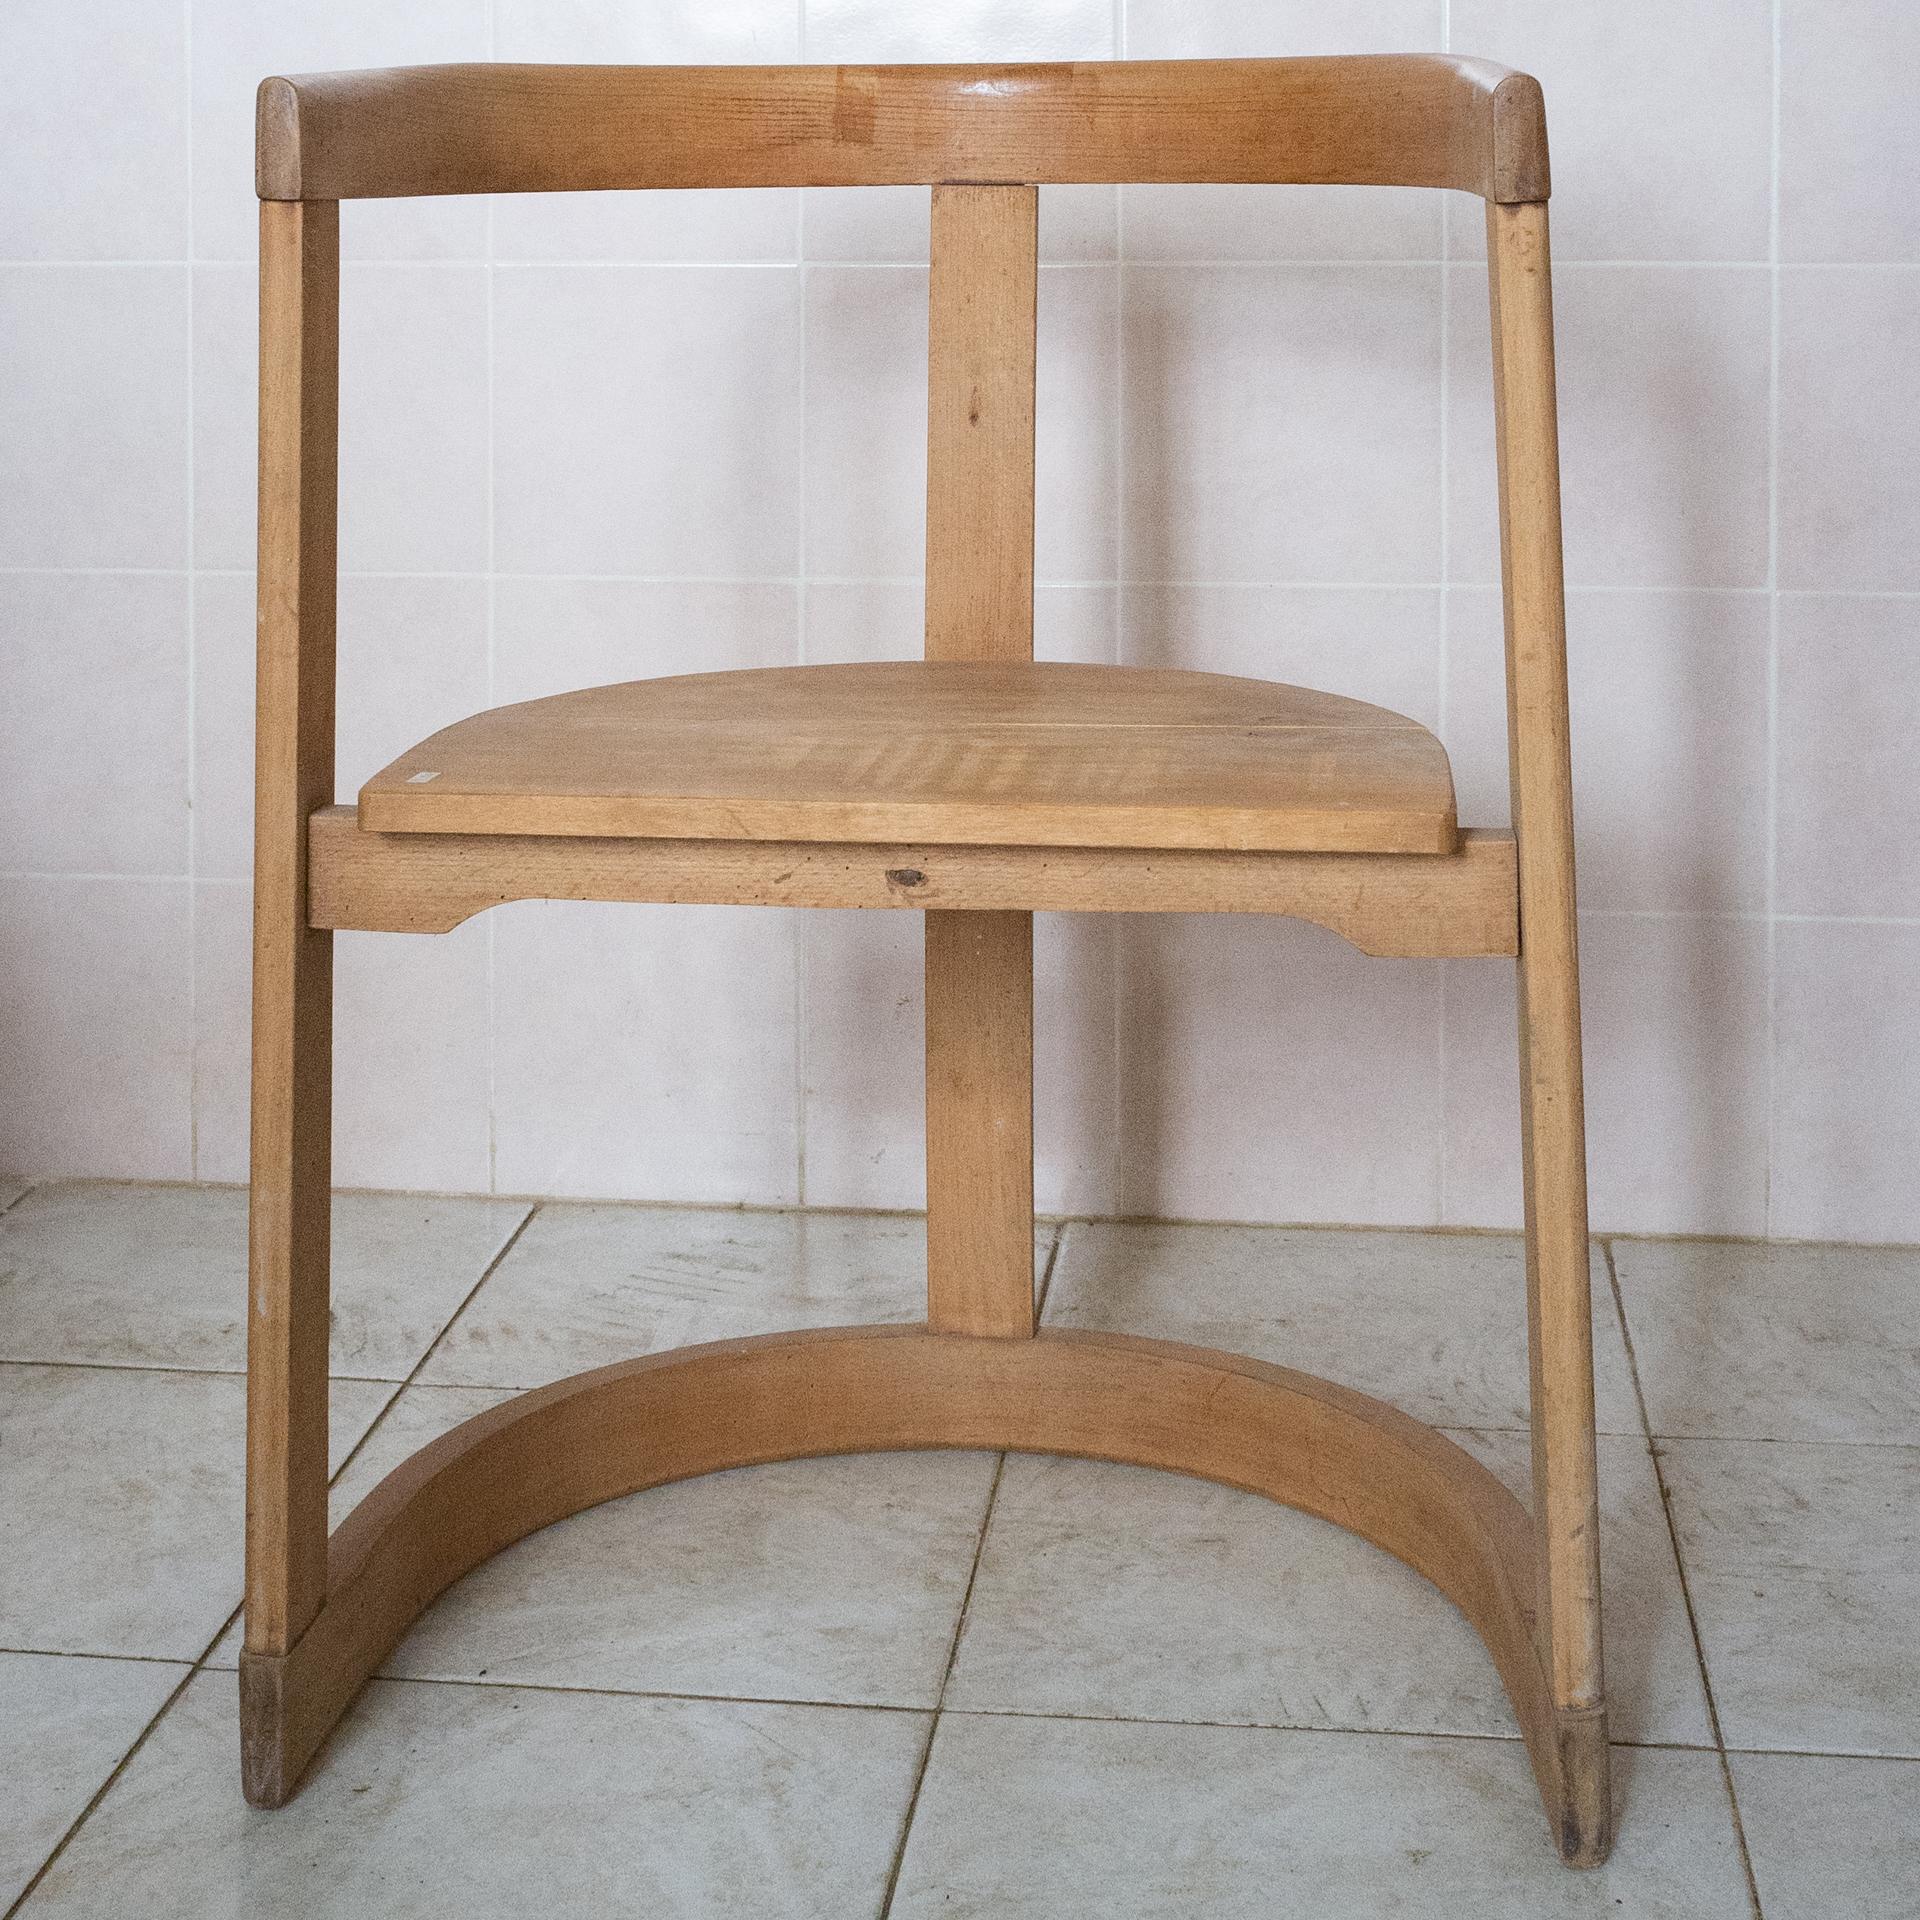 M/1026 - Alter hölzerner Prototyp eines Stuhls, möglicherweise ein berühmter Stuhl. Siehe: Stuhl Catilina, Azucena 1958, von Luigi Caccia Dominioni. Ich habe es vor vielen Jahren in einem alten Lagerhaus in Lombard gefunden. 
Vielleicht ist es der